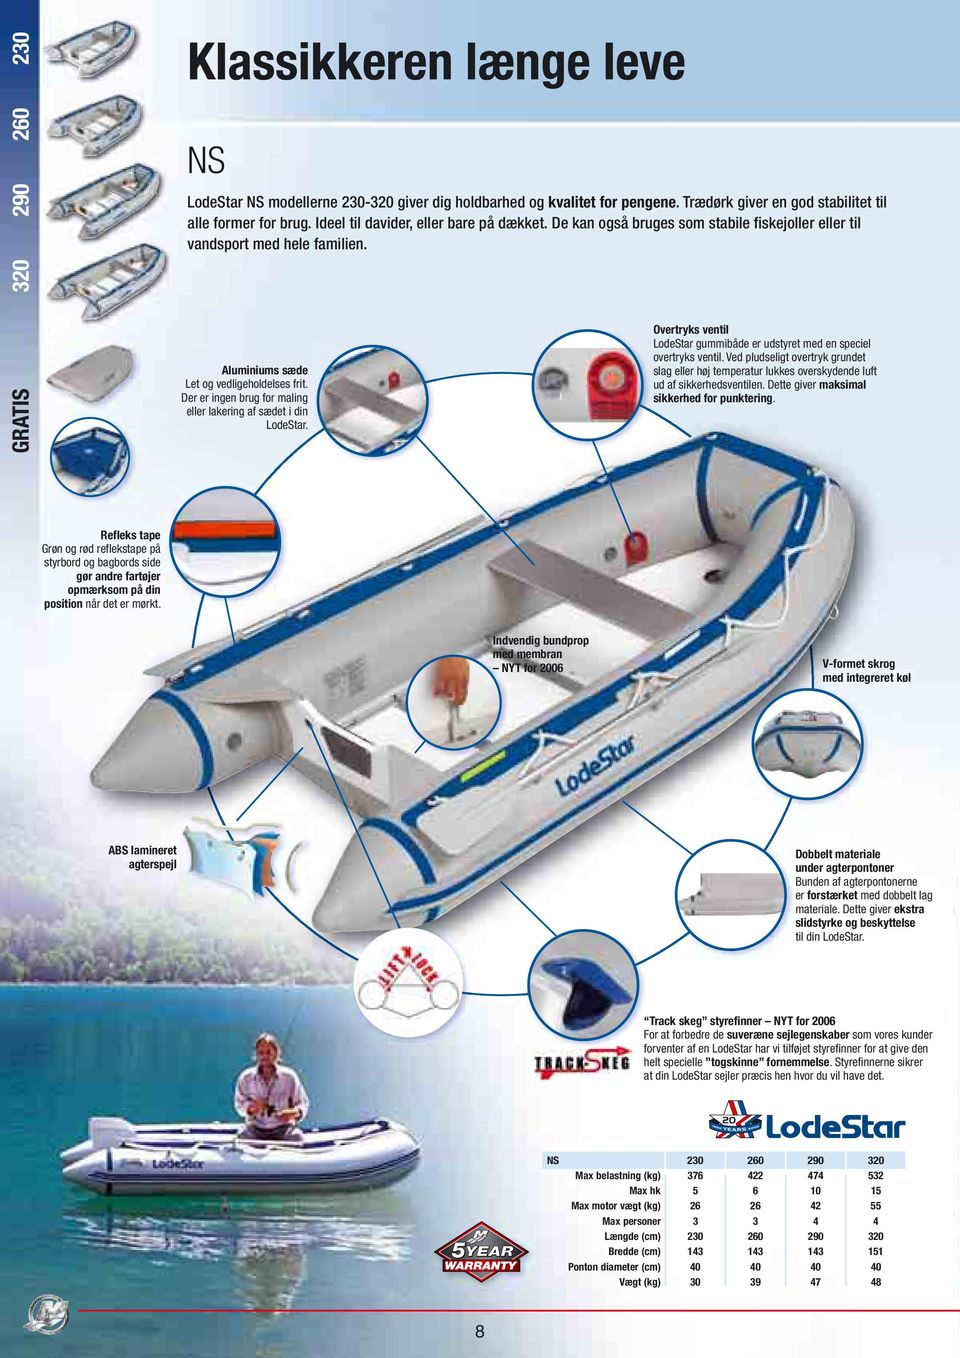 Der er ingen brug for maling eller lakering af sædet i din LodeStar. LodeStar gummibåde er udstyret med en speciel overtryks ventil.